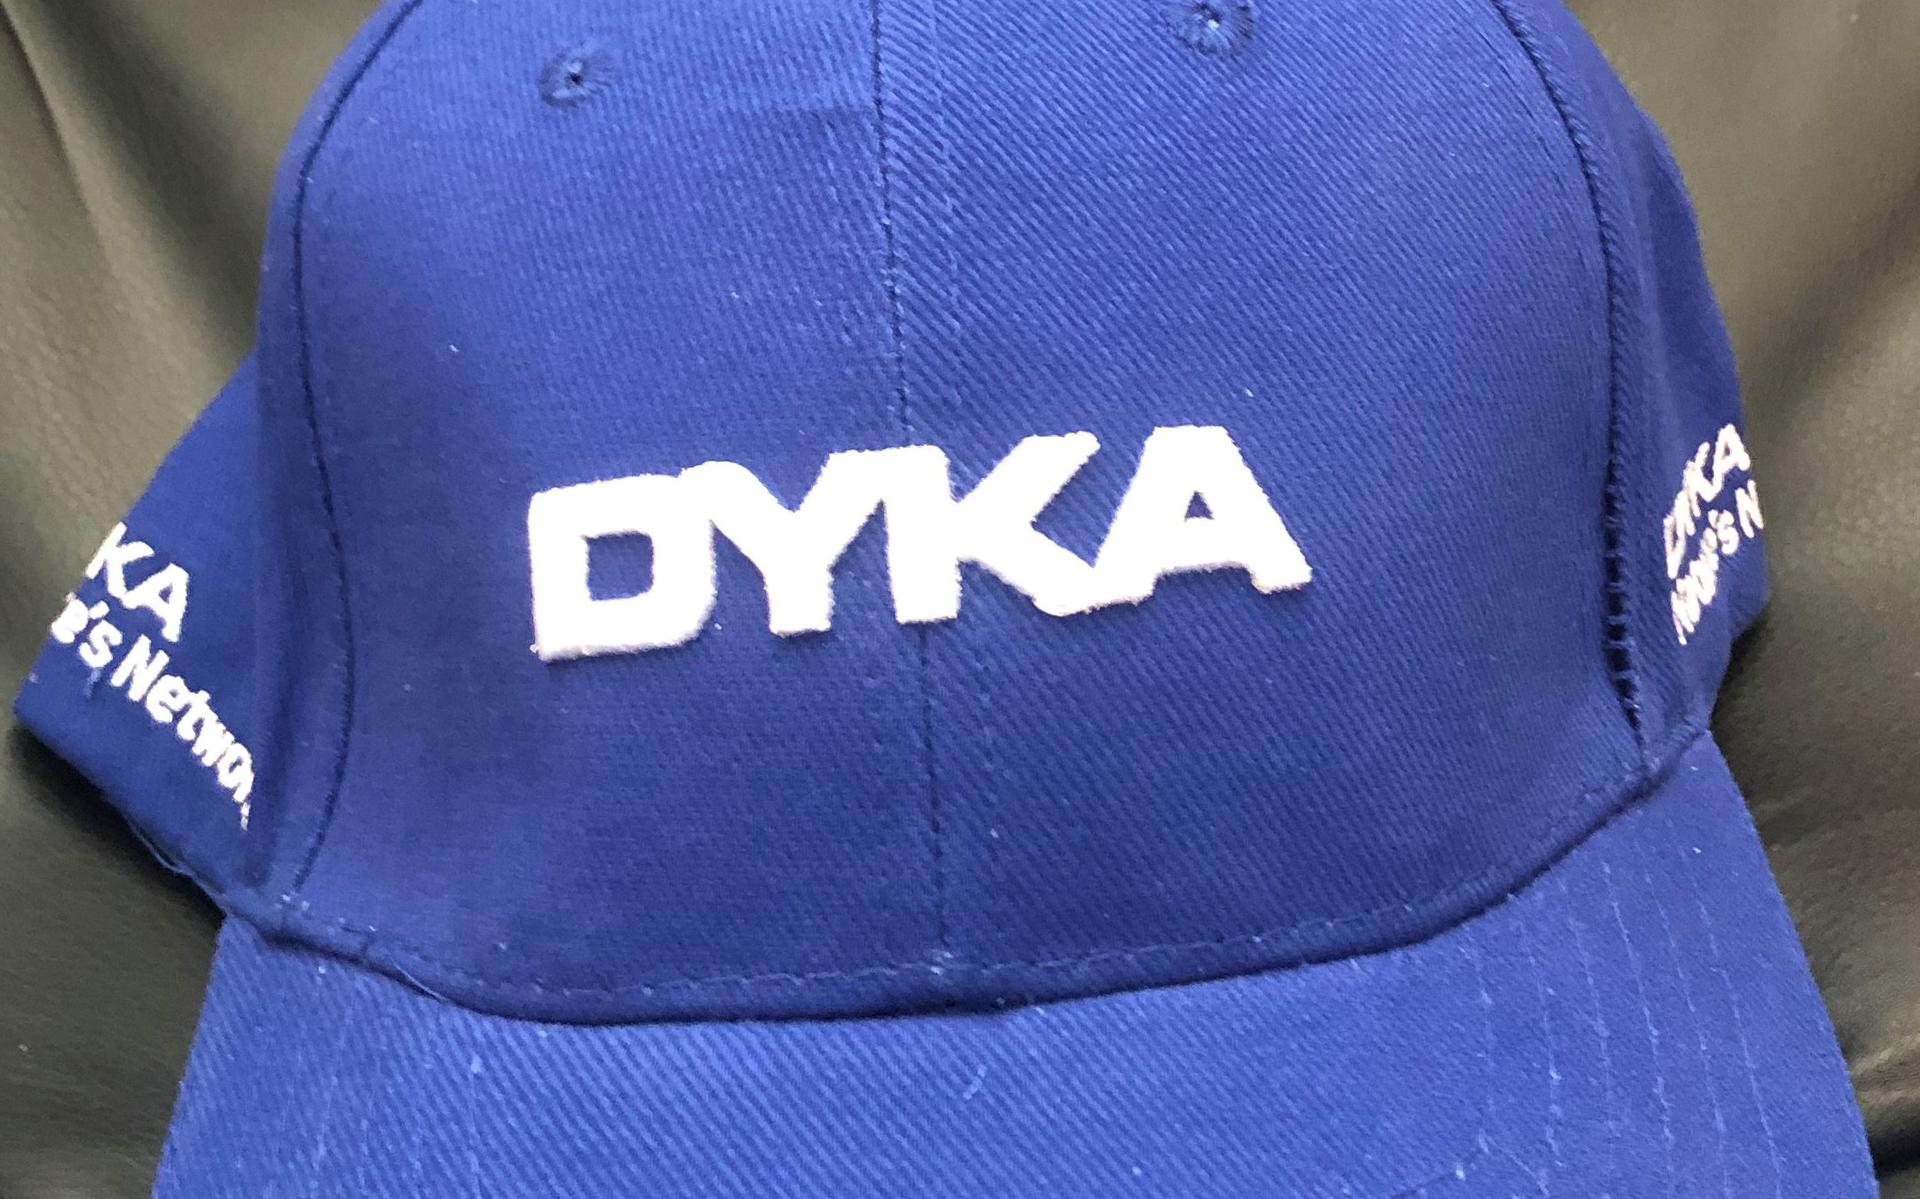 Voor alle 2.500 bezoekers was er zaterdag een Dyka cap!